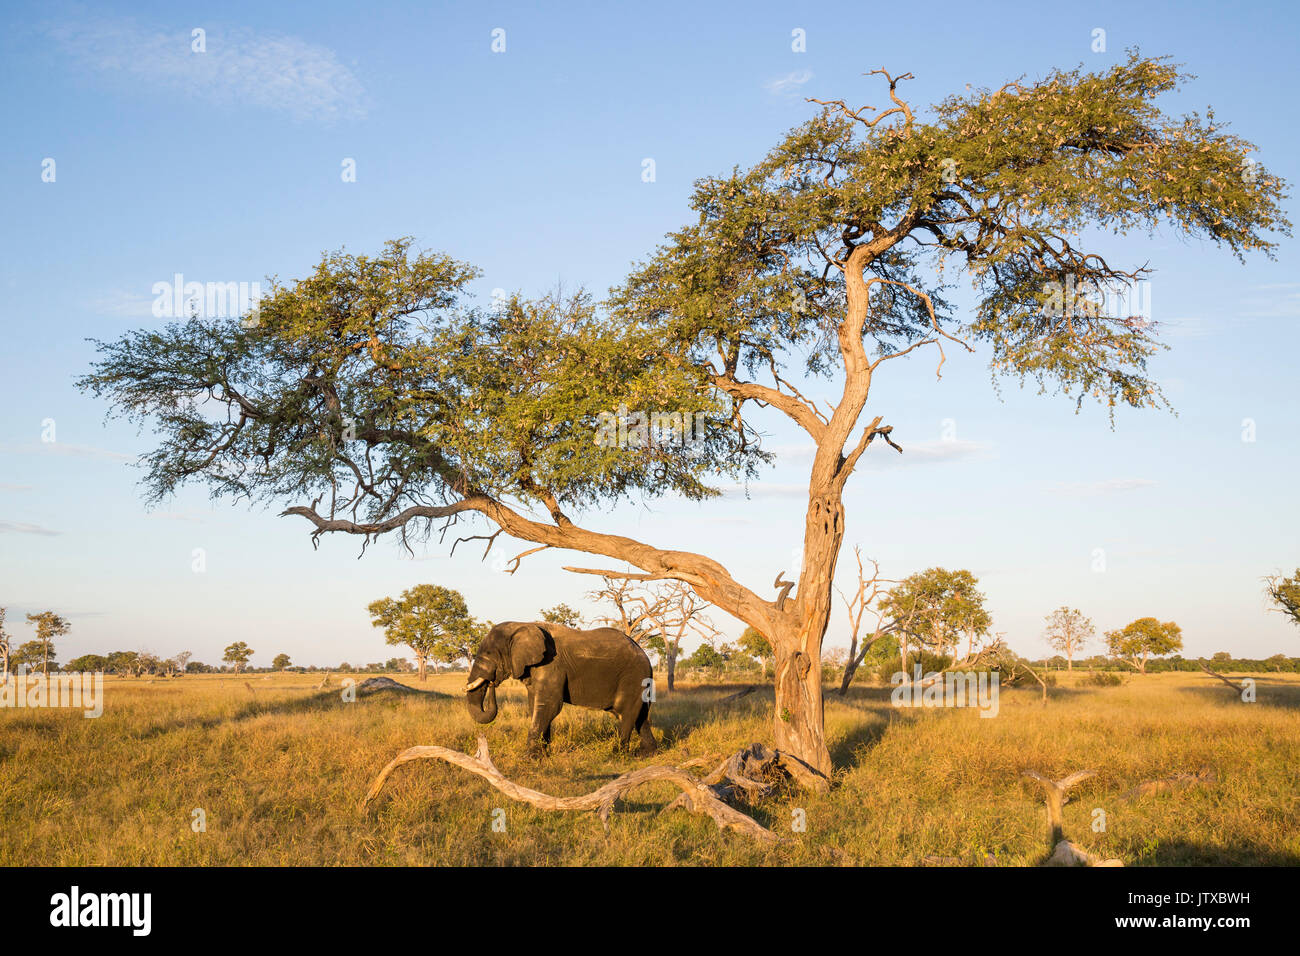 Les éléphants d'Afrique (Loxodonta africana) bull se nourrissant sur les gousses d'un arbre camelthorn (Acacia erioloba) sur une plaine de prairies ouvertes Banque D'Images